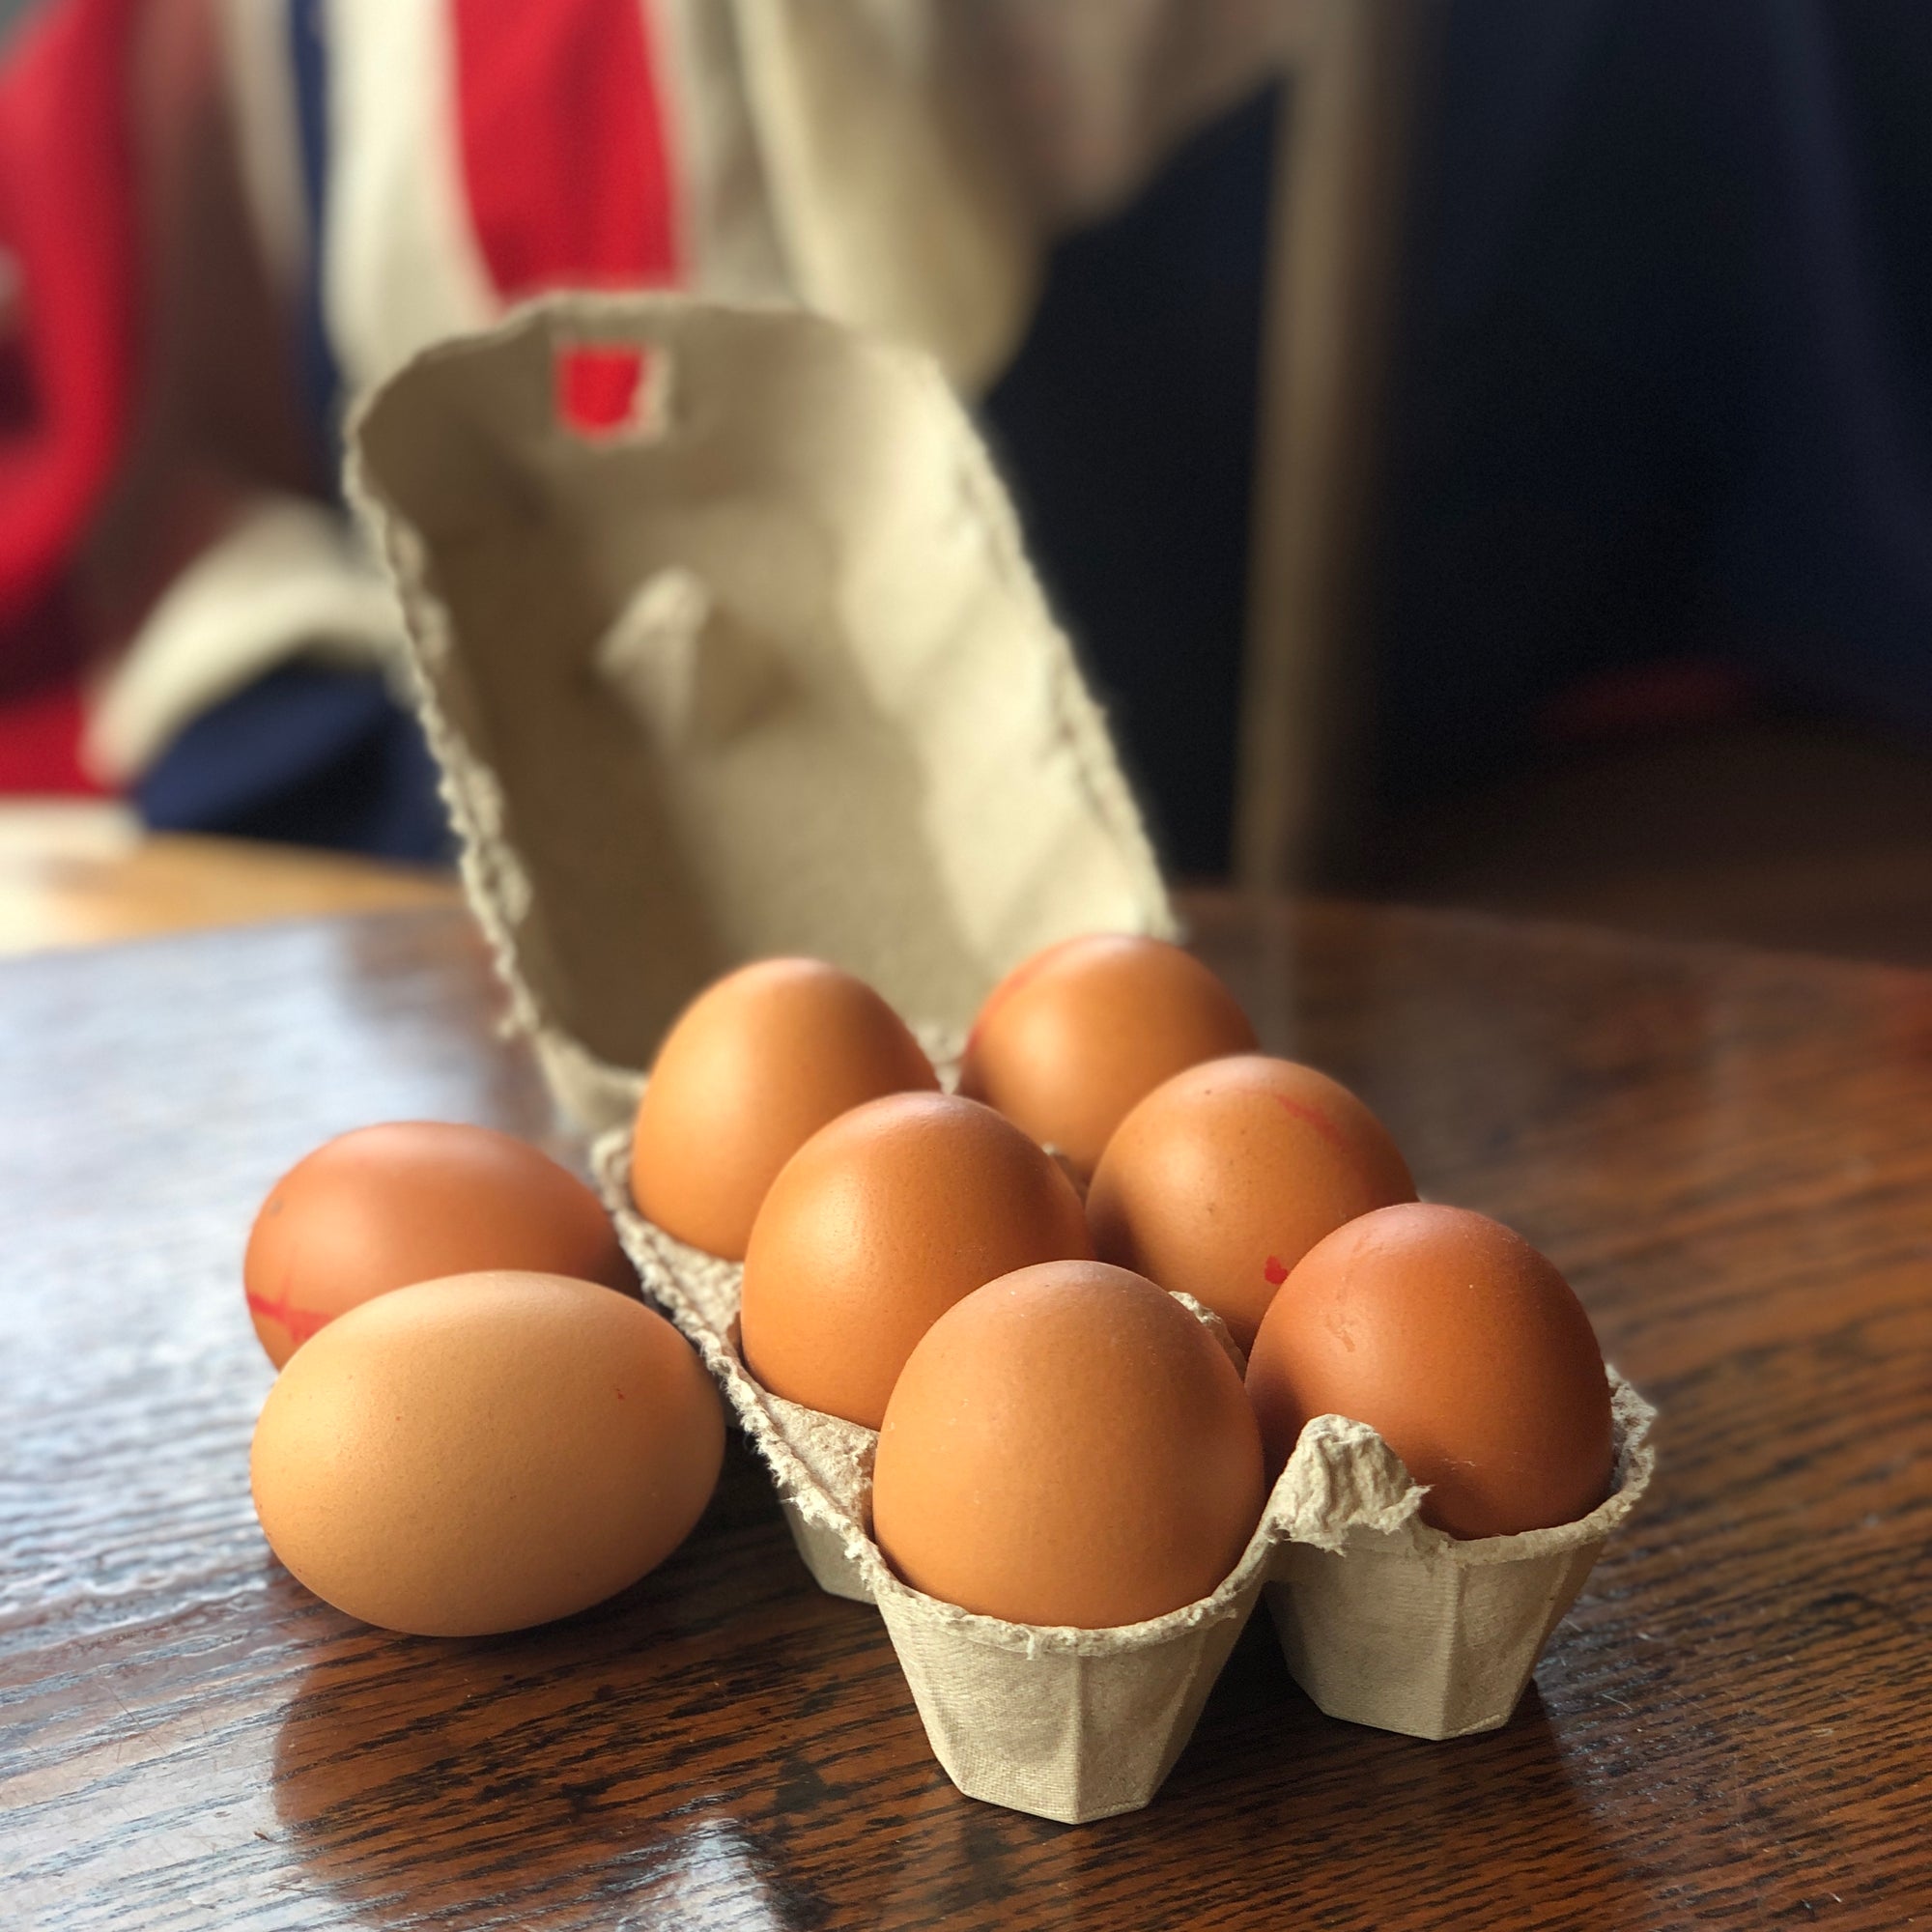 6 x Free Range Eggs (Extra Large)